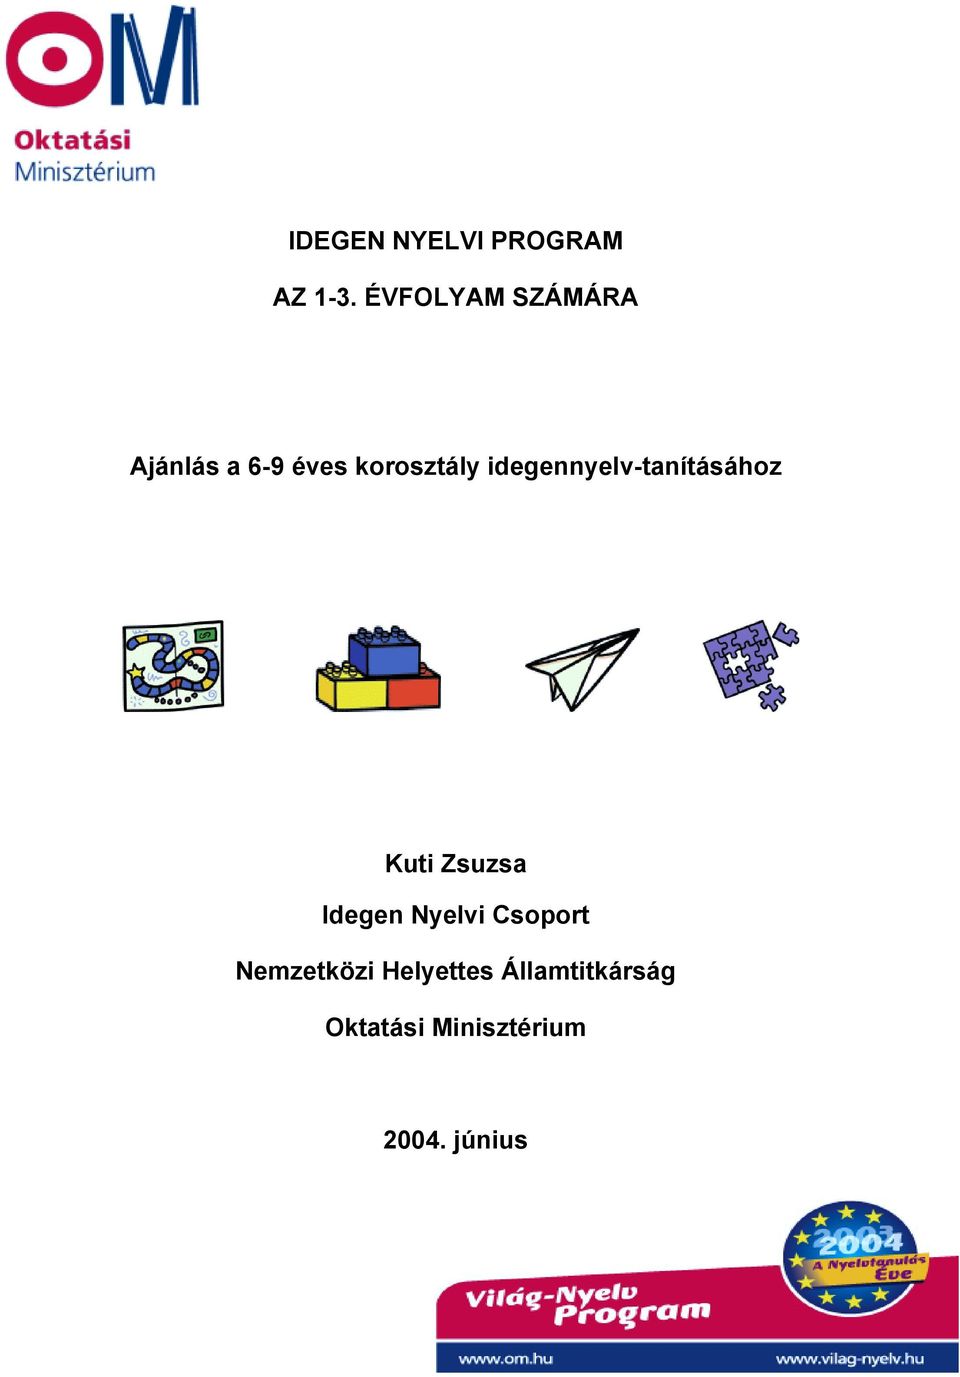 IDEGEN NYELVI PROGRAM. Ajánlás a 6-9 éves korosztály idegennyelv-tanításához  - PDF Ingyenes letöltés